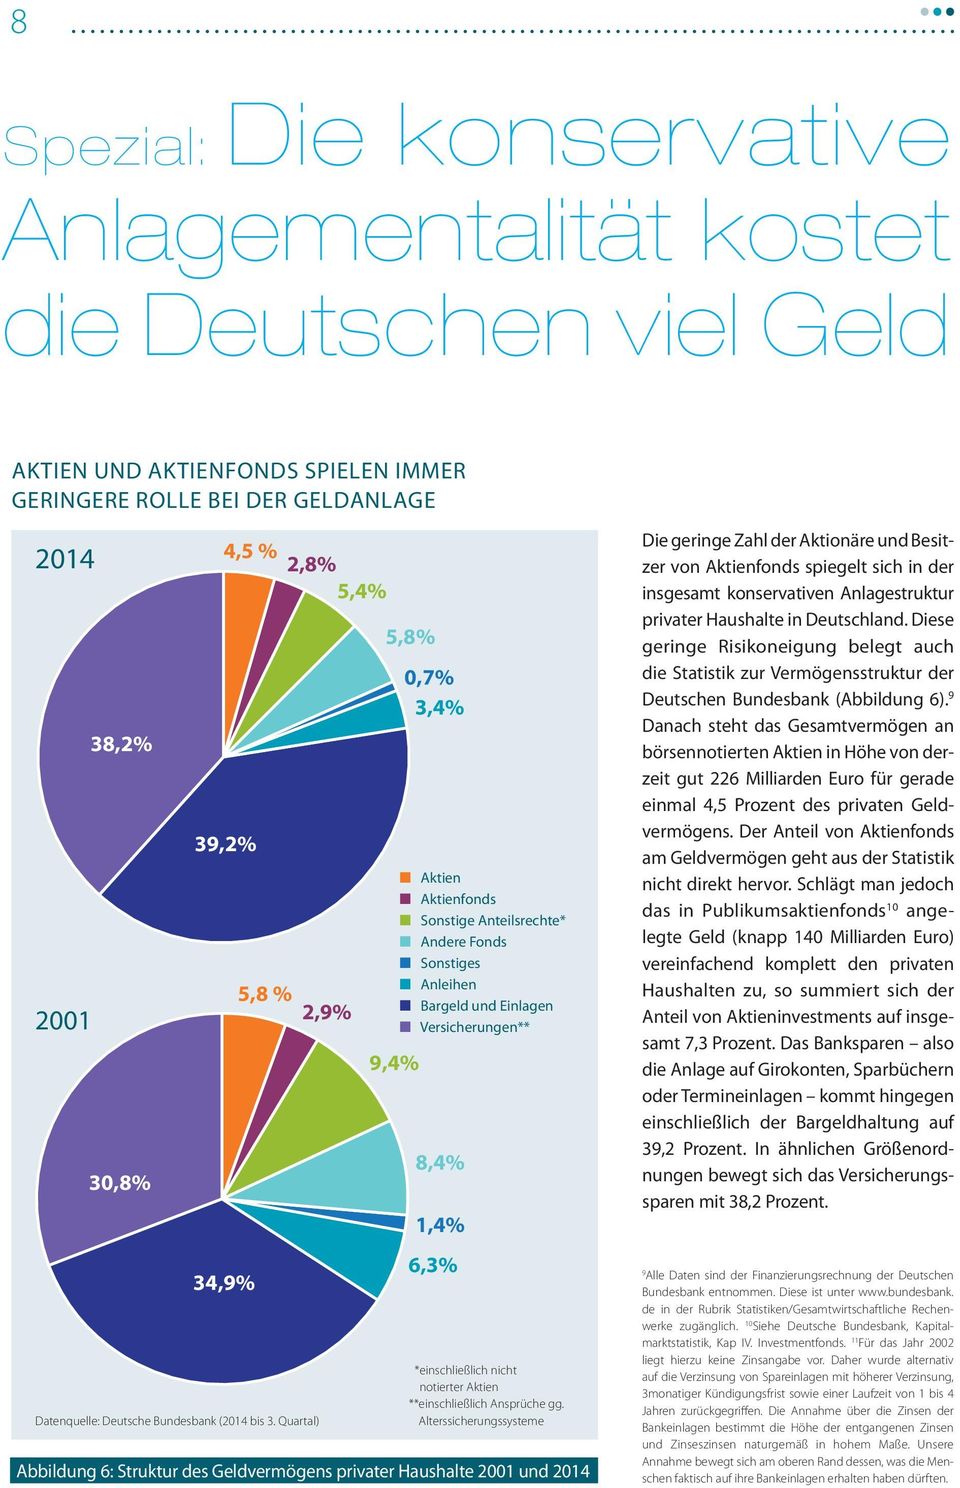 Aktienfonds spiegelt sich in der insgesamt konservativen Anlagestruktur privater Haushalte in Deutschland.